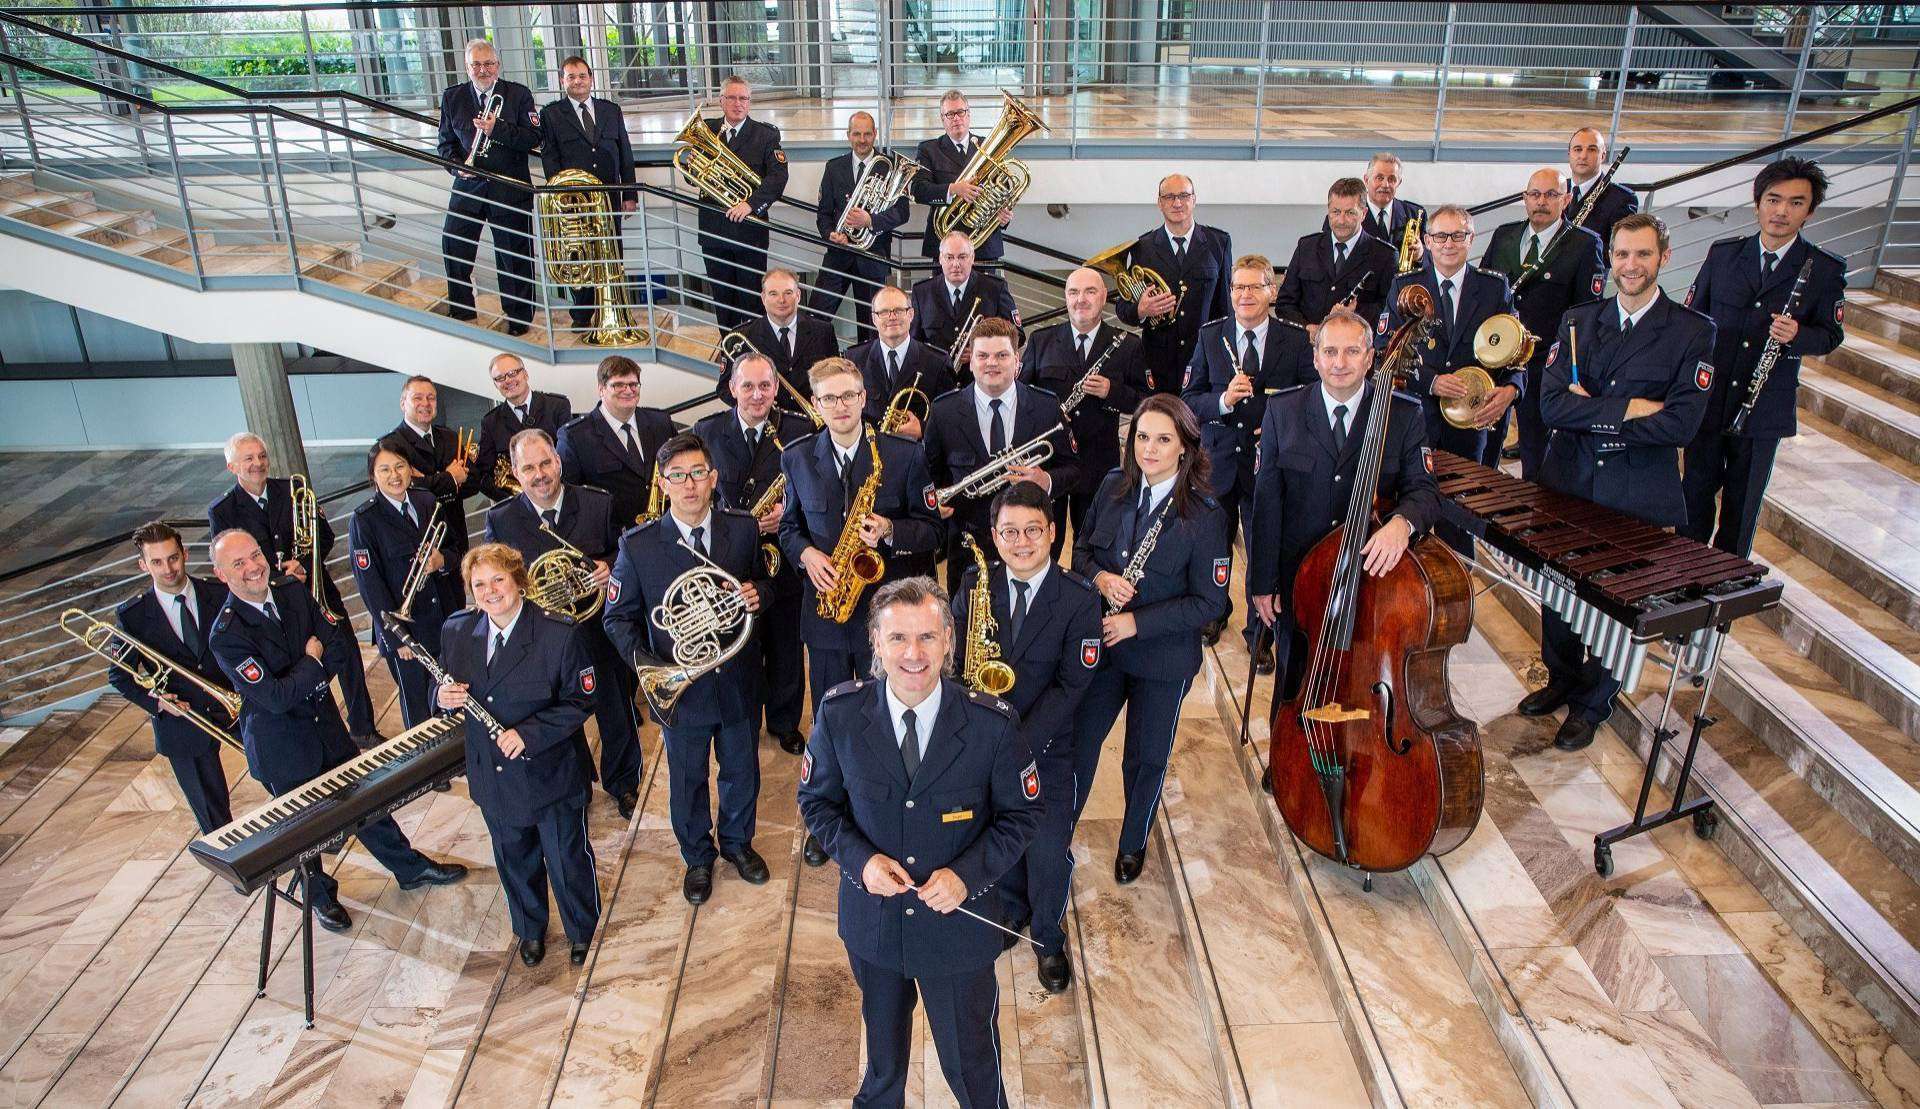 Das Polizeiorchester Rotenburg spielt am Freitag, 15. März, ab 19 Uhr in der Glasrotunde bei Sternpartner in Rotenburg.